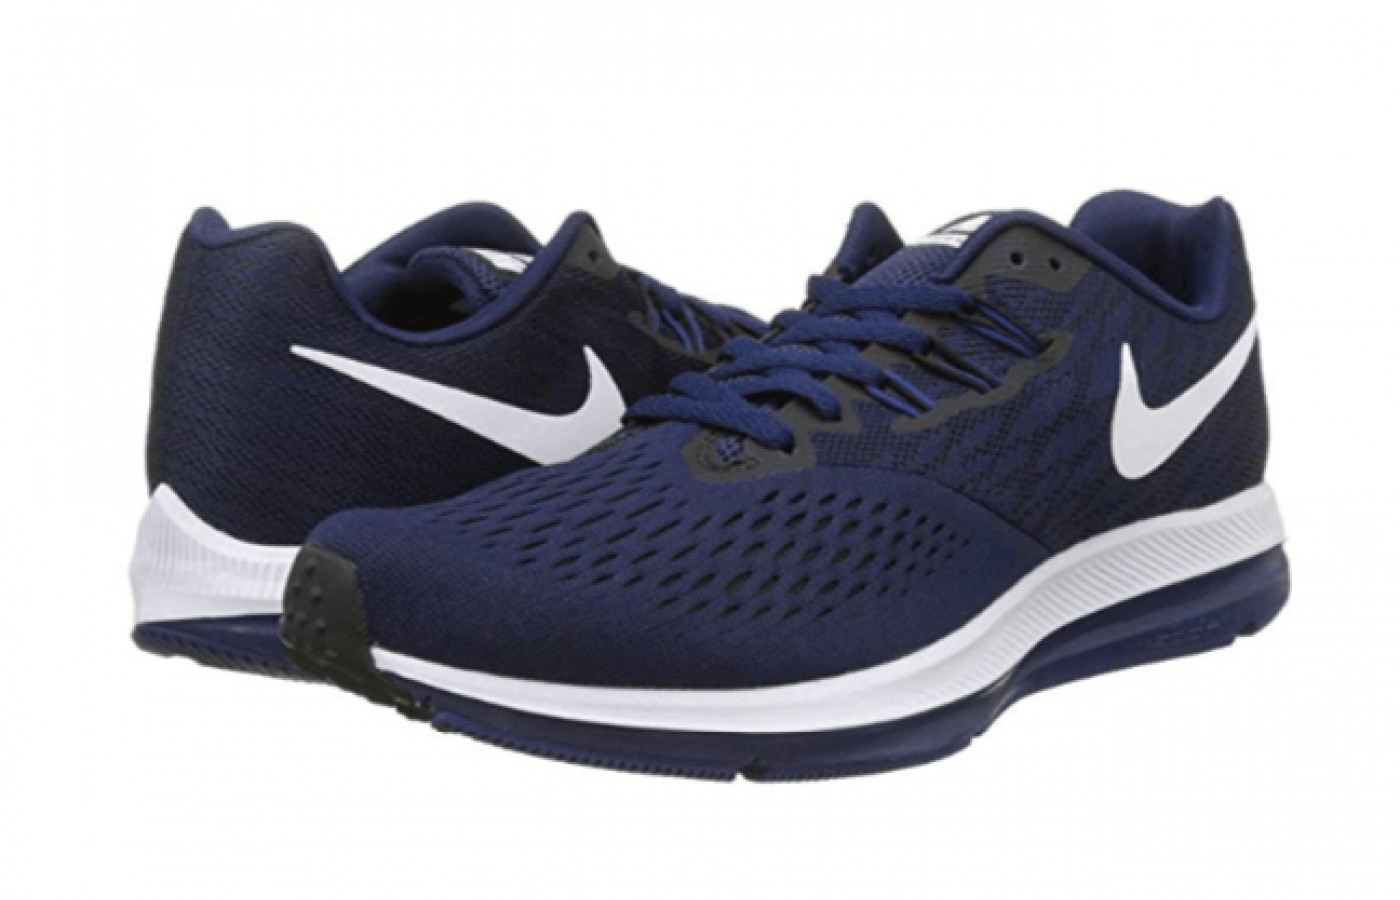 Nike Winflo 4 Running Shoe Reviewed | Gearweare.net